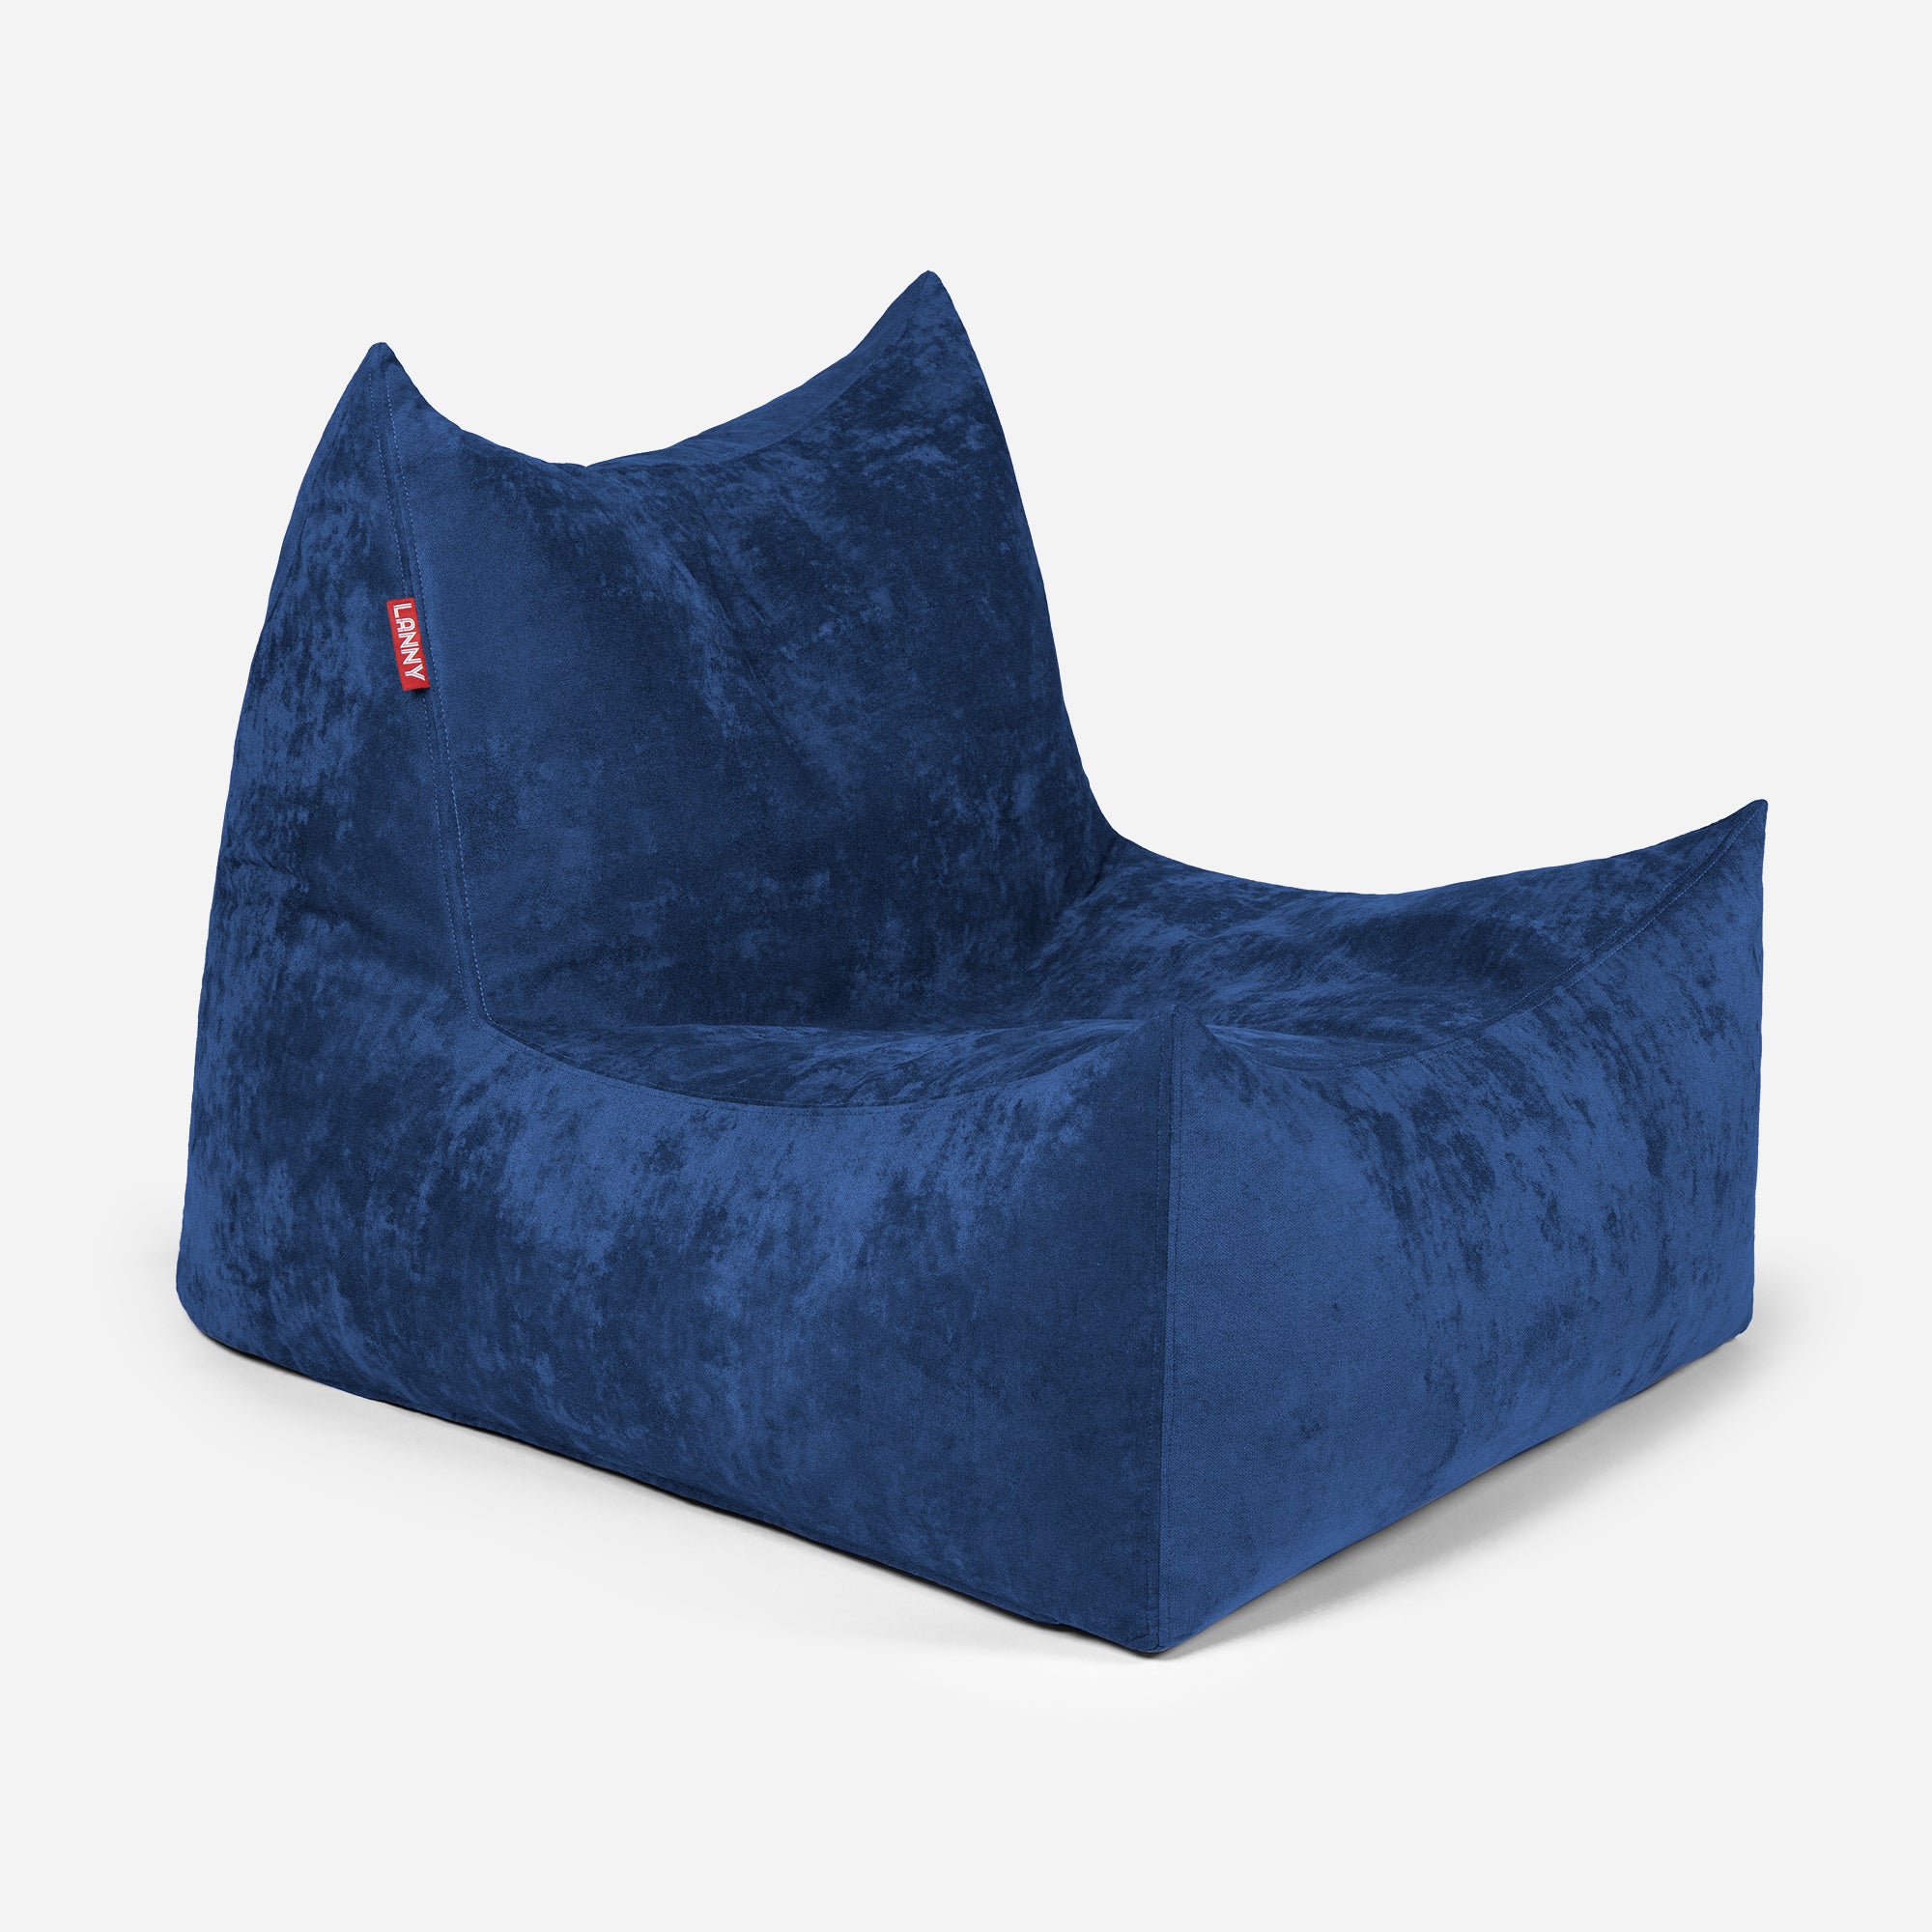 Quadro Aldo Blue Bean bag Chair